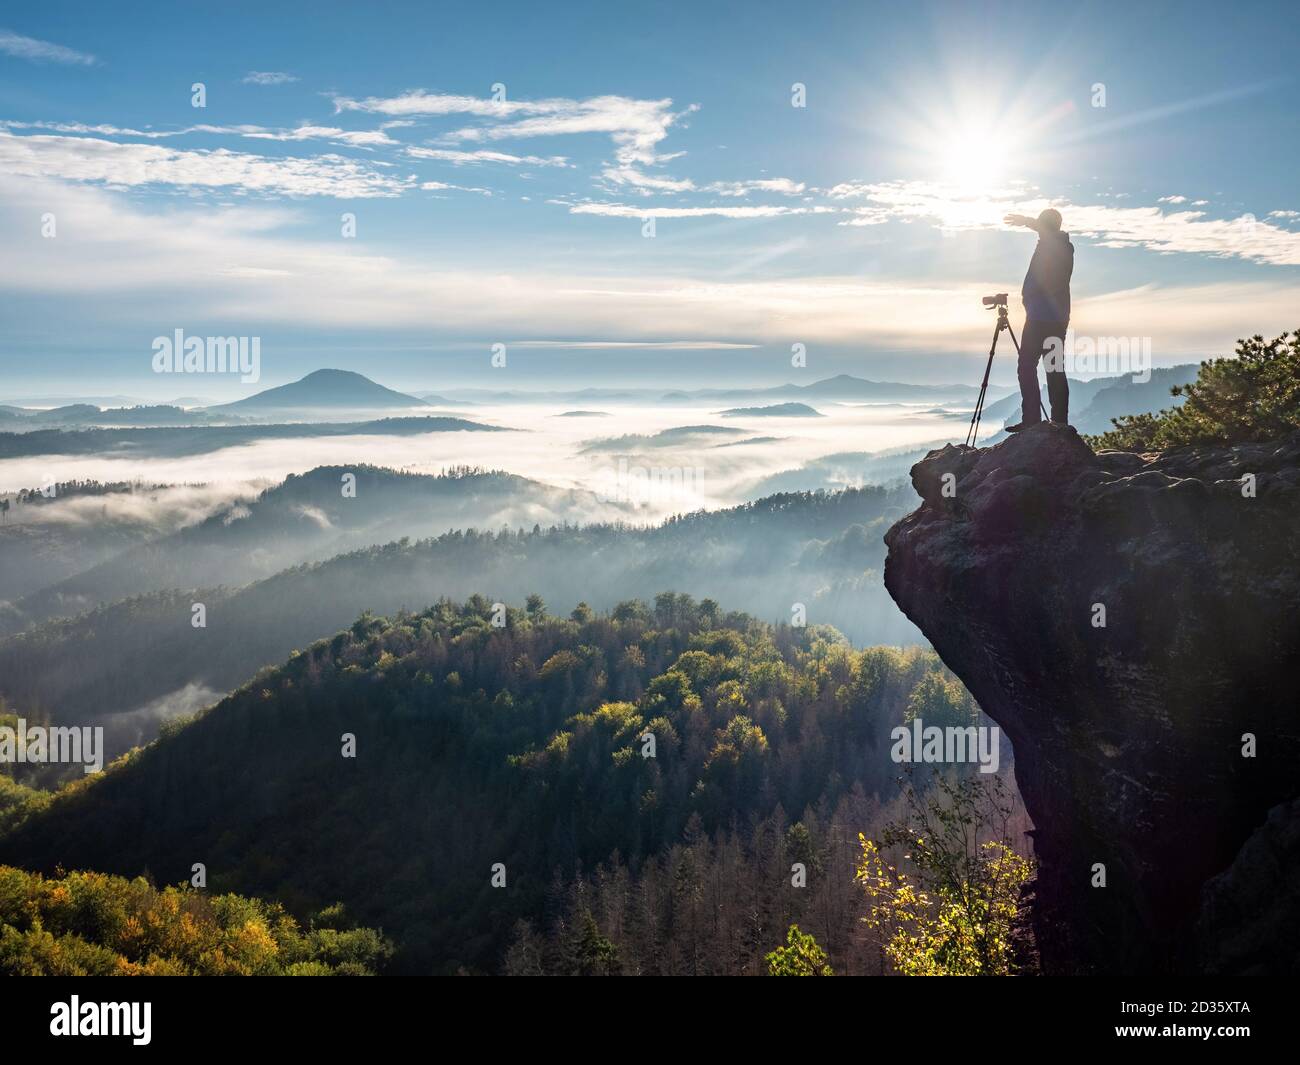 Il fotografo scatta foto con la fotocamera sulle colline del mattino. Fotografo di paesaggi naturali con attrezzatura fotografica su roc Foto Stock